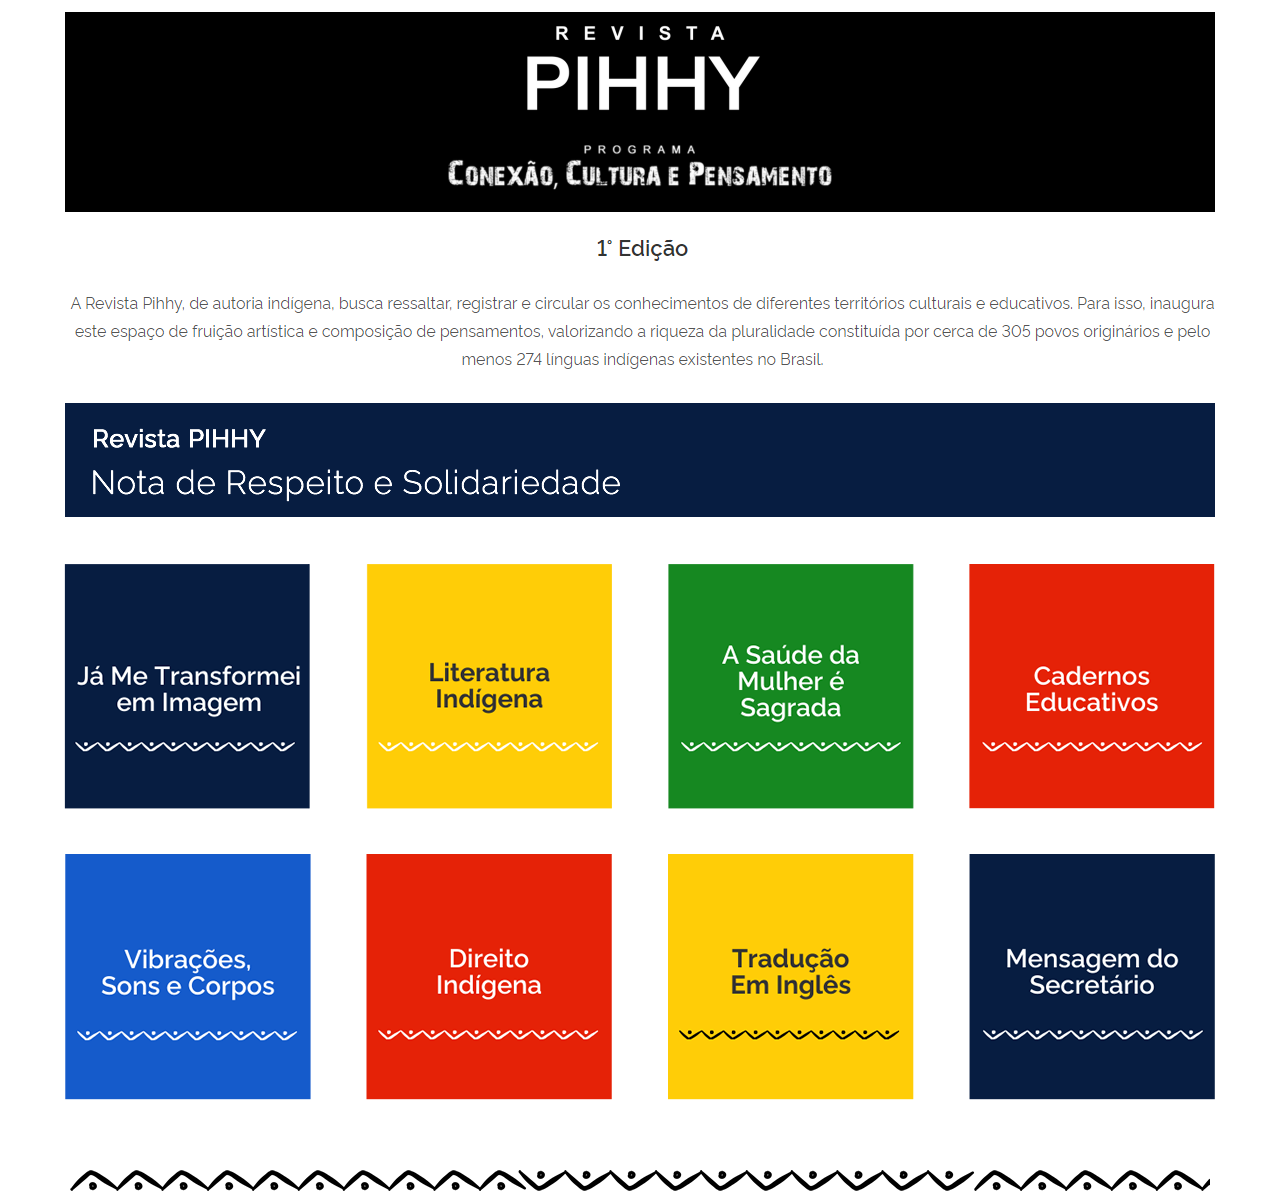 Pihhy-1 - Cards de categorias 19 Pihhy-1 - Cards de categorias